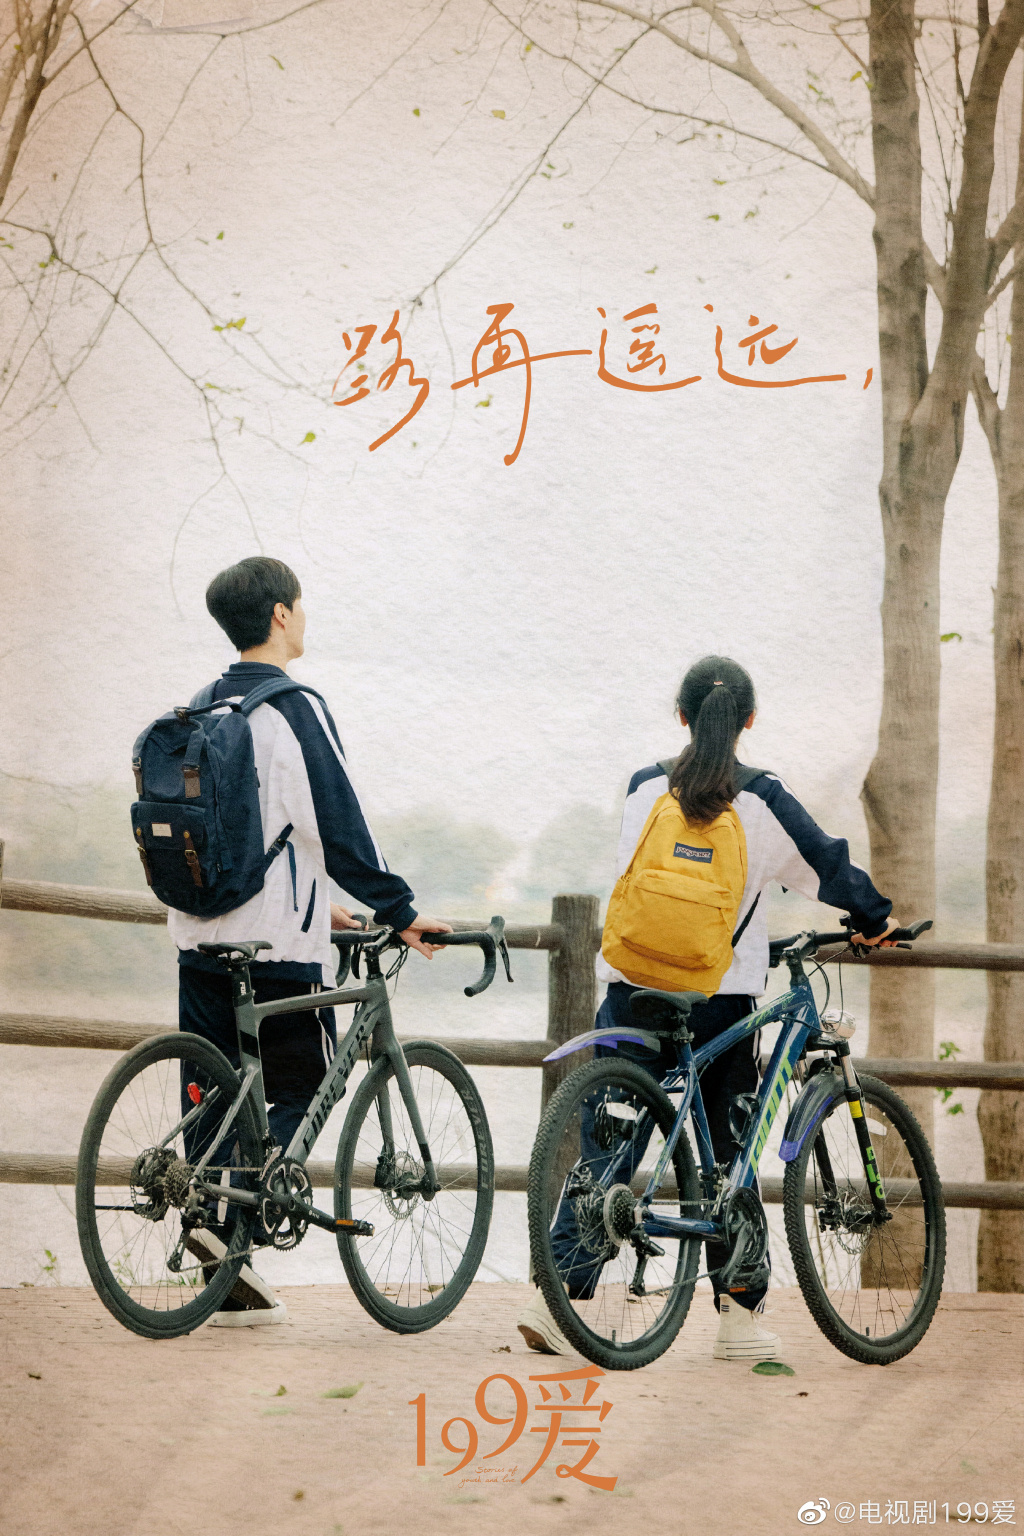 Dương Tử và Phạm Thừa Thừa rủ nhau đi đạp xe vào ngày lễ tình nhân, đàng gái không giấu được niềm hạnh phúc trên khuôn mặt - Ảnh 1